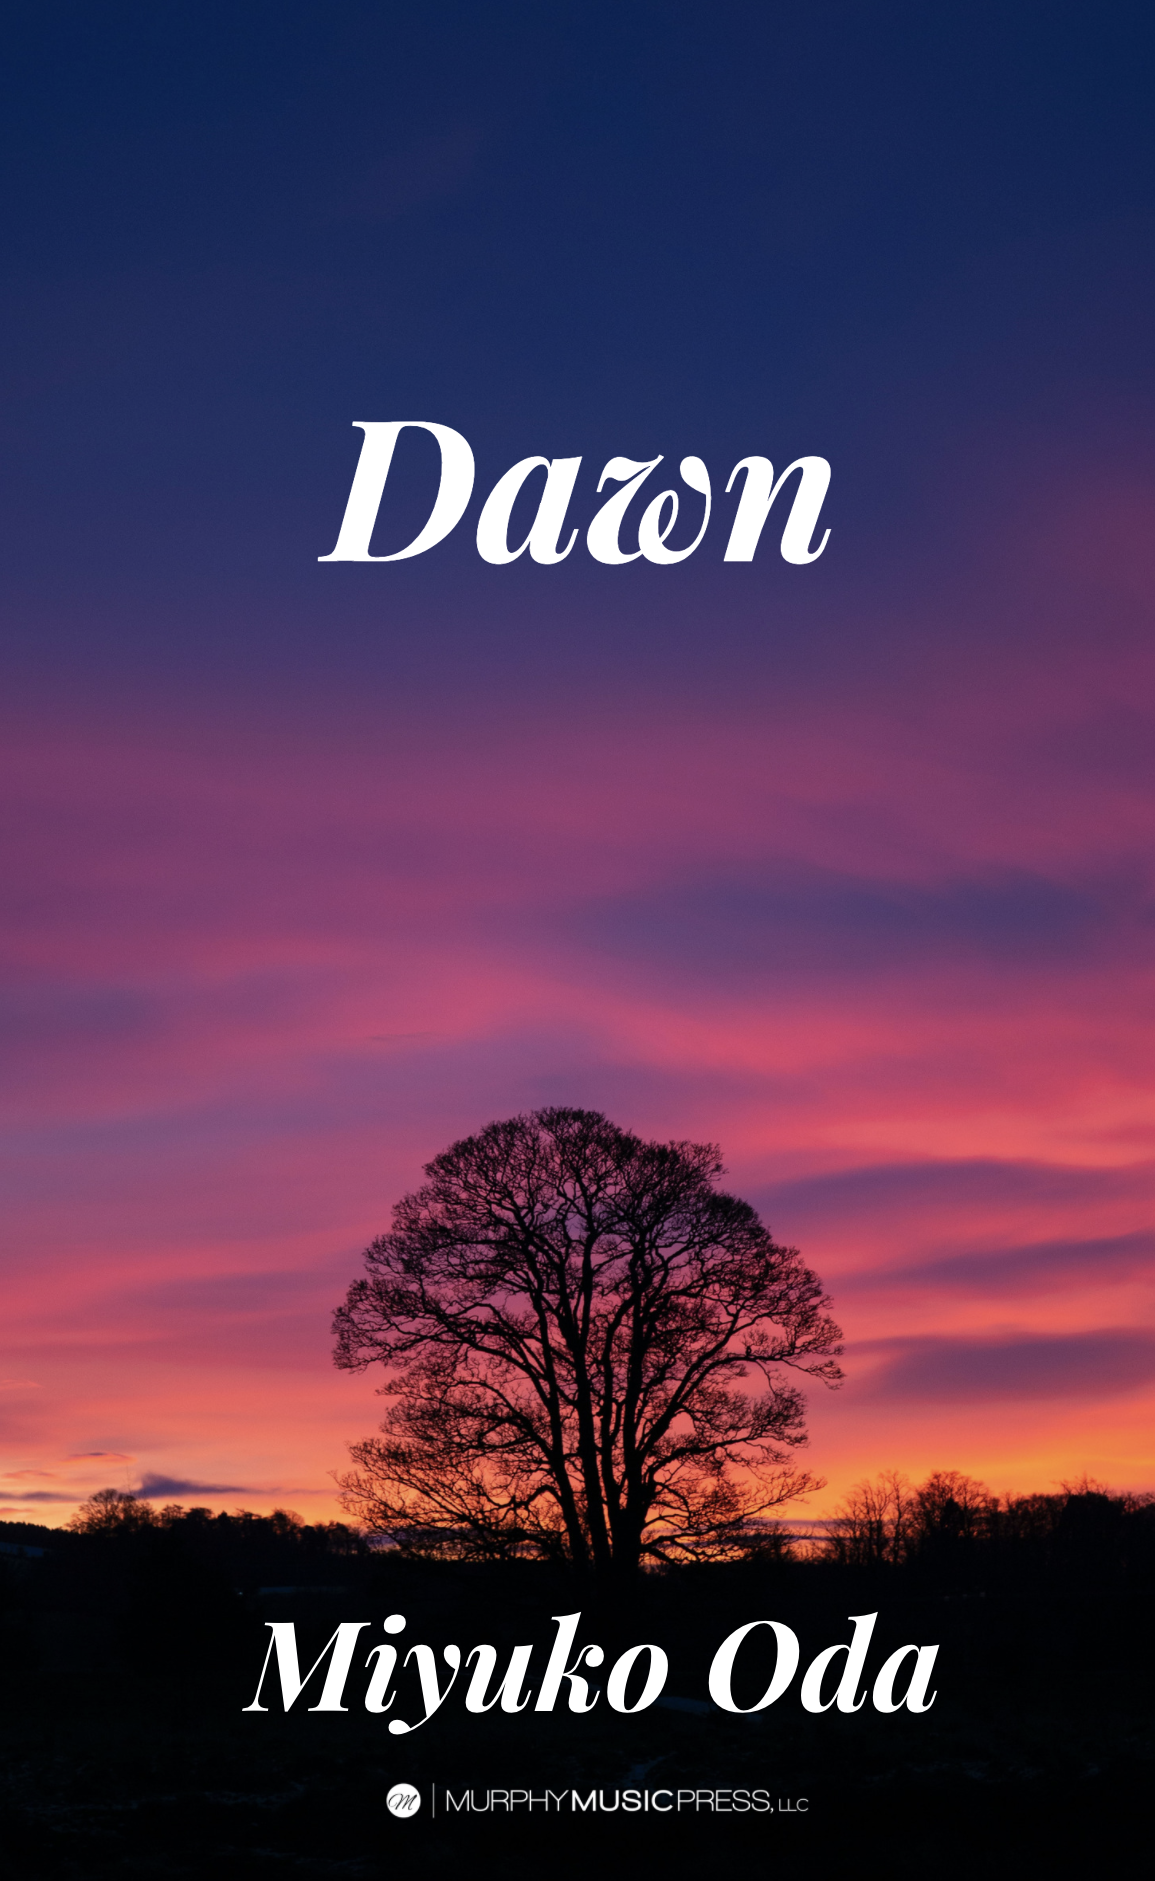 Dawn (Score Only) by Miyuko Oda